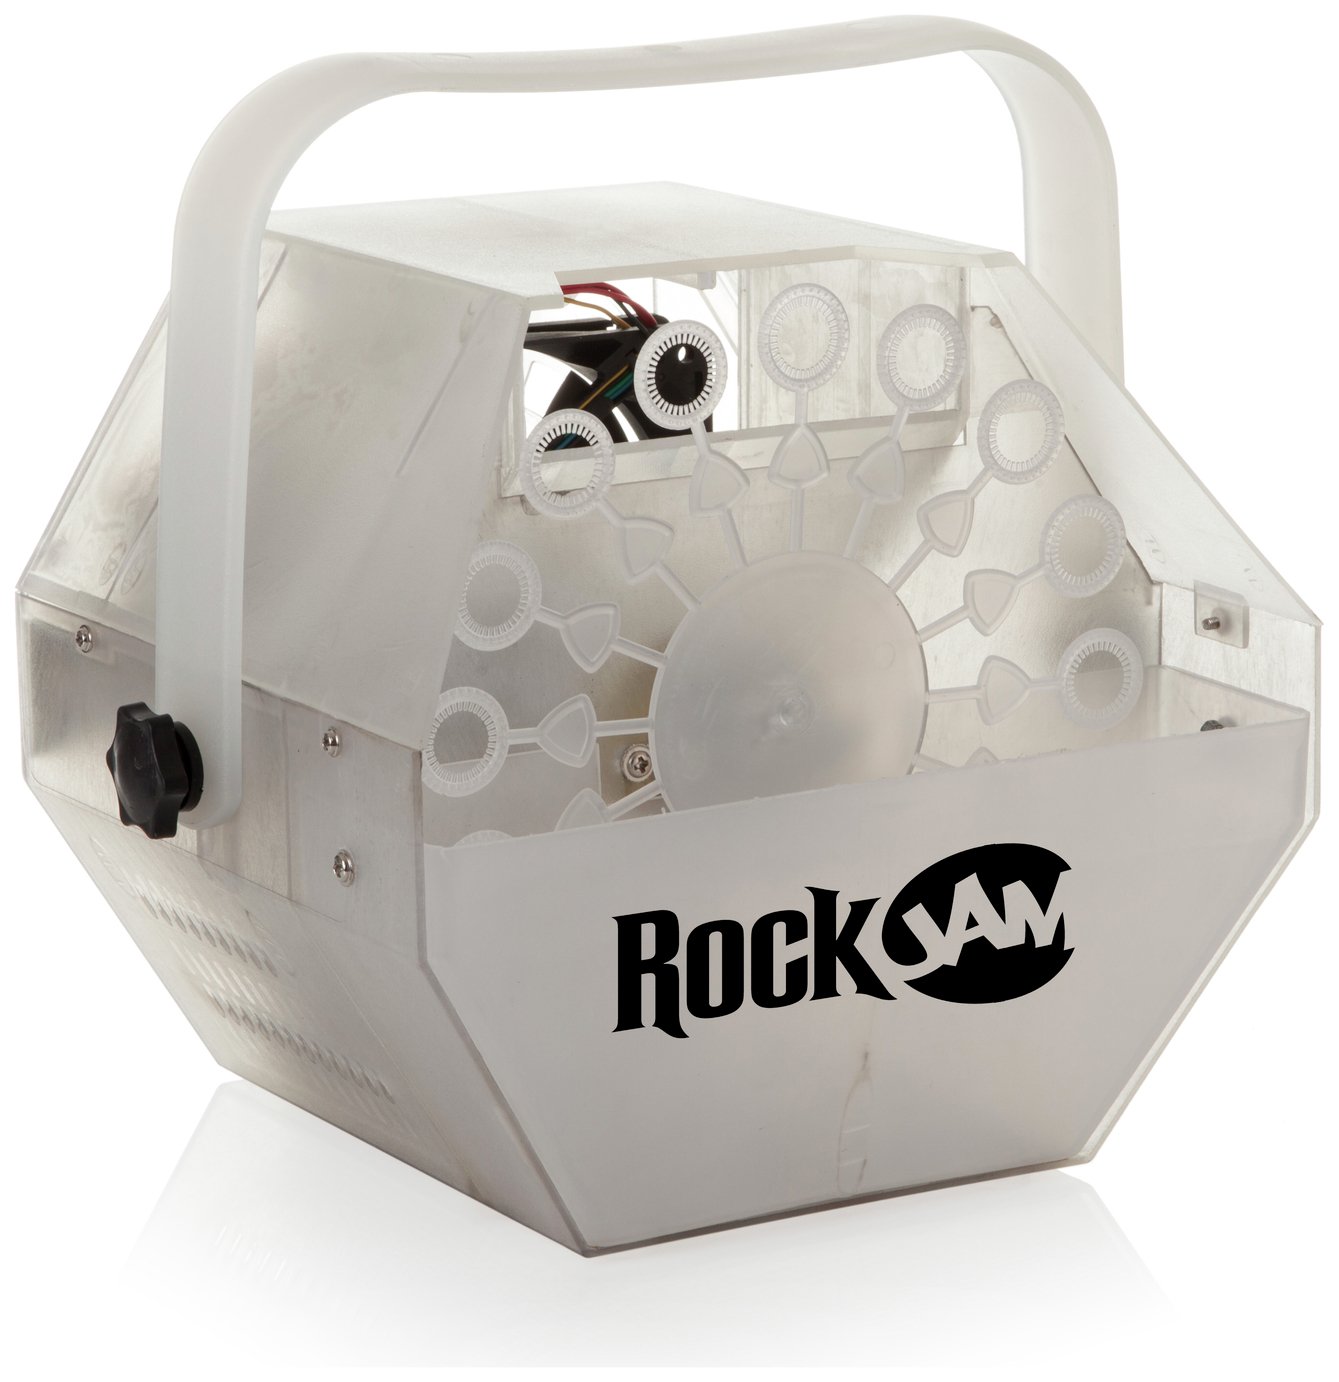 RockJam Lightshow Bubble Machine Kit